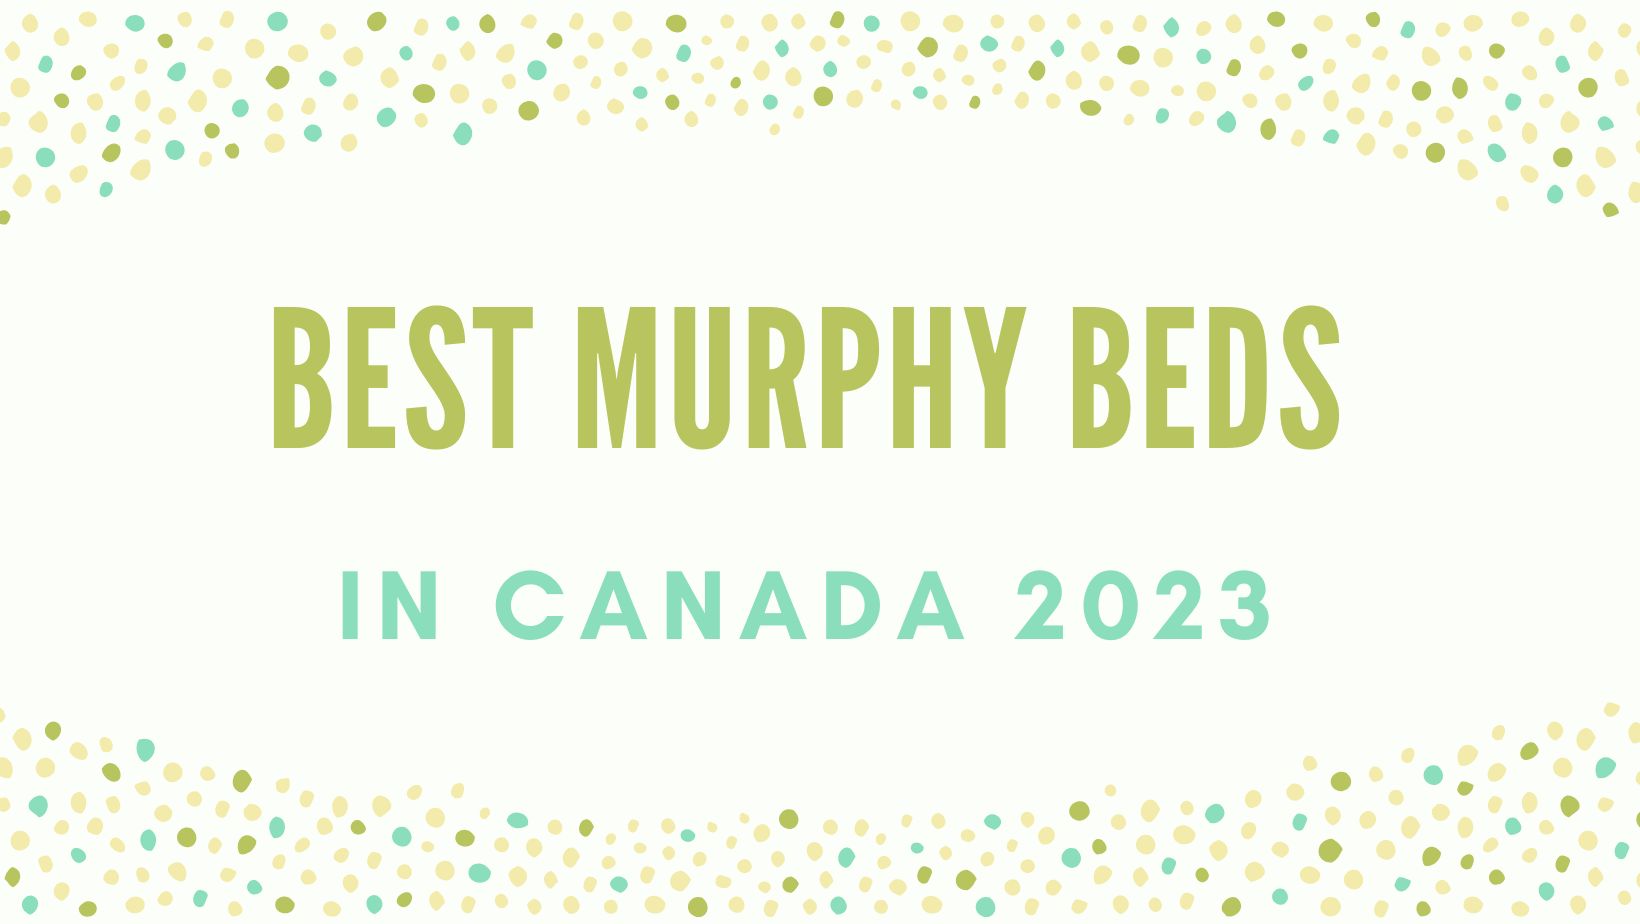 Top 5 Murphy Beds in Canada 2023